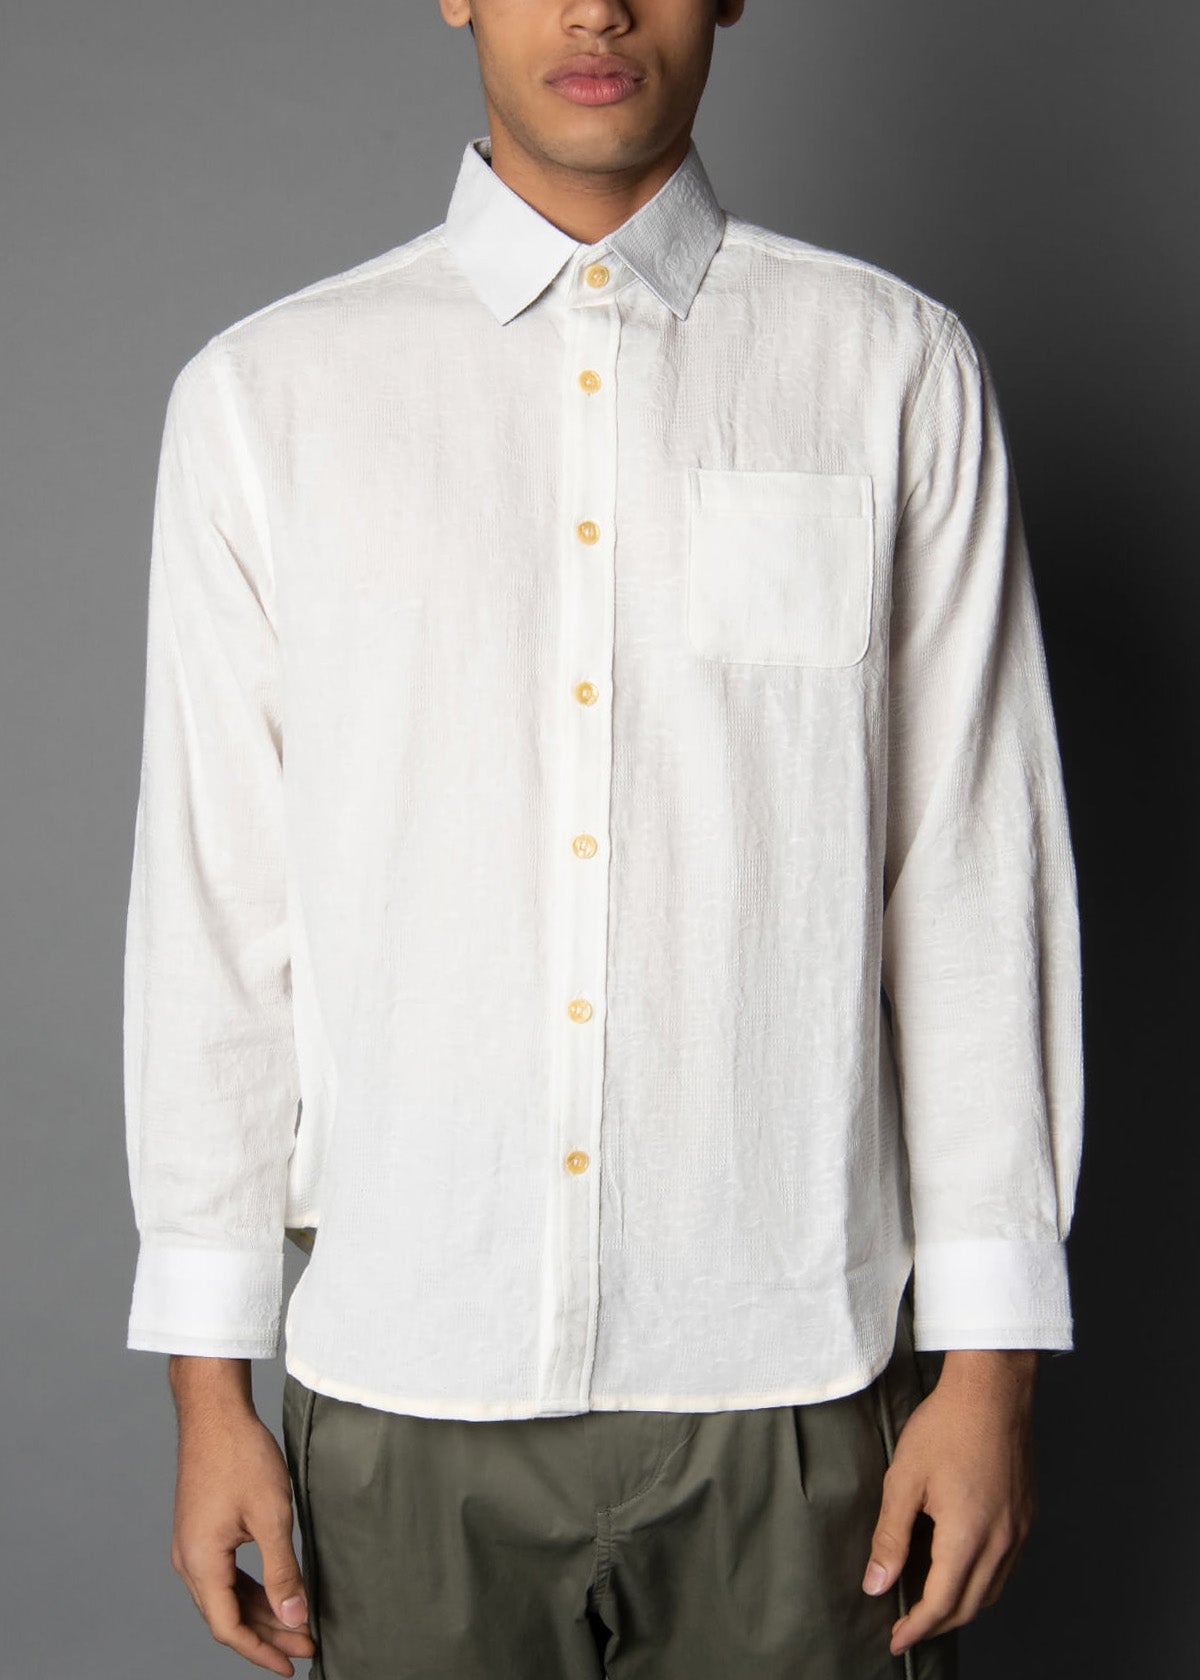 white woven jacquard shirt for men